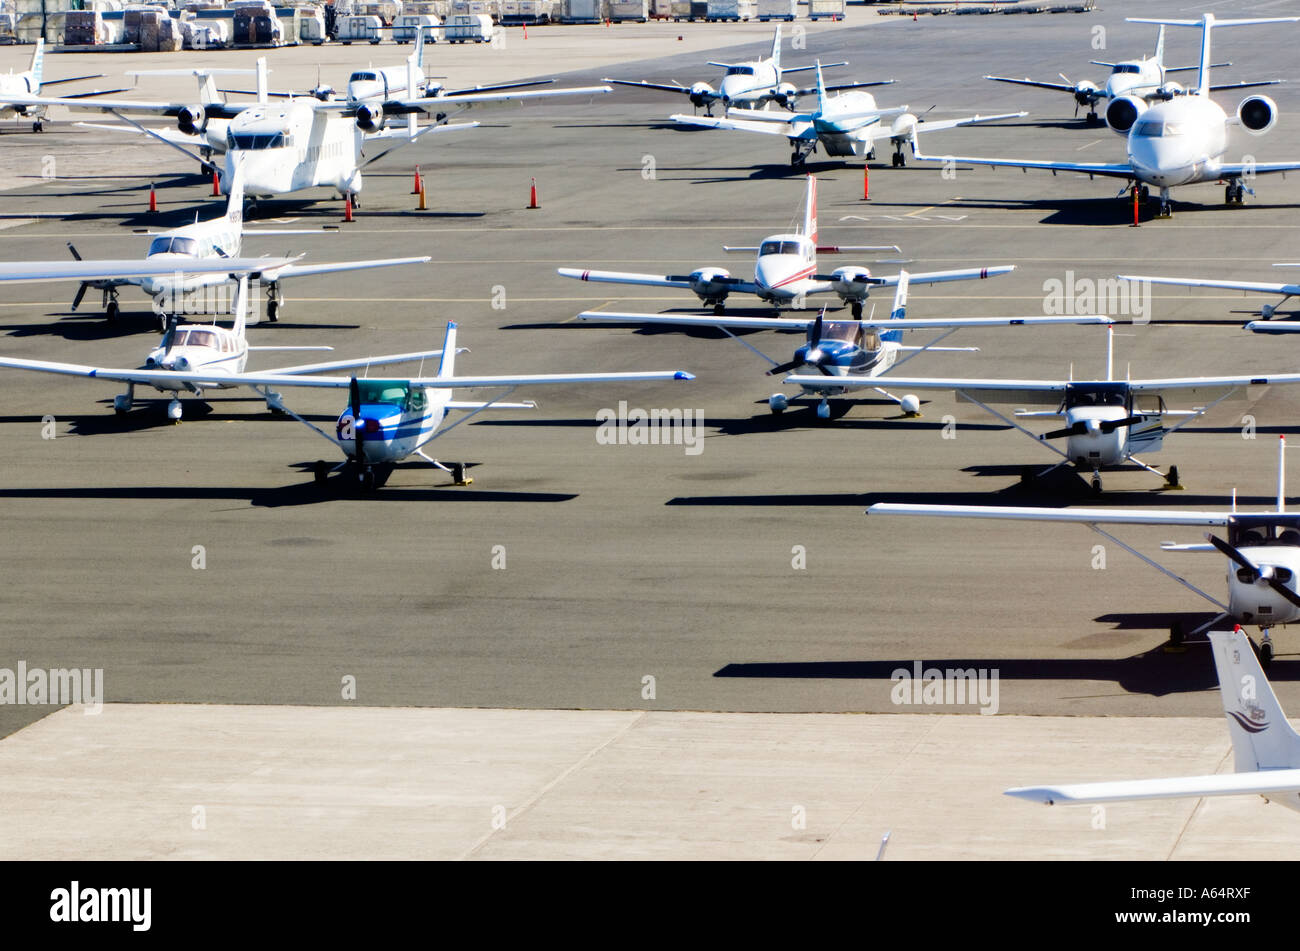 De petits avions sur le tarmac de l'aéroport d'Honolulu Oahu Hawaii. Banque D'Images